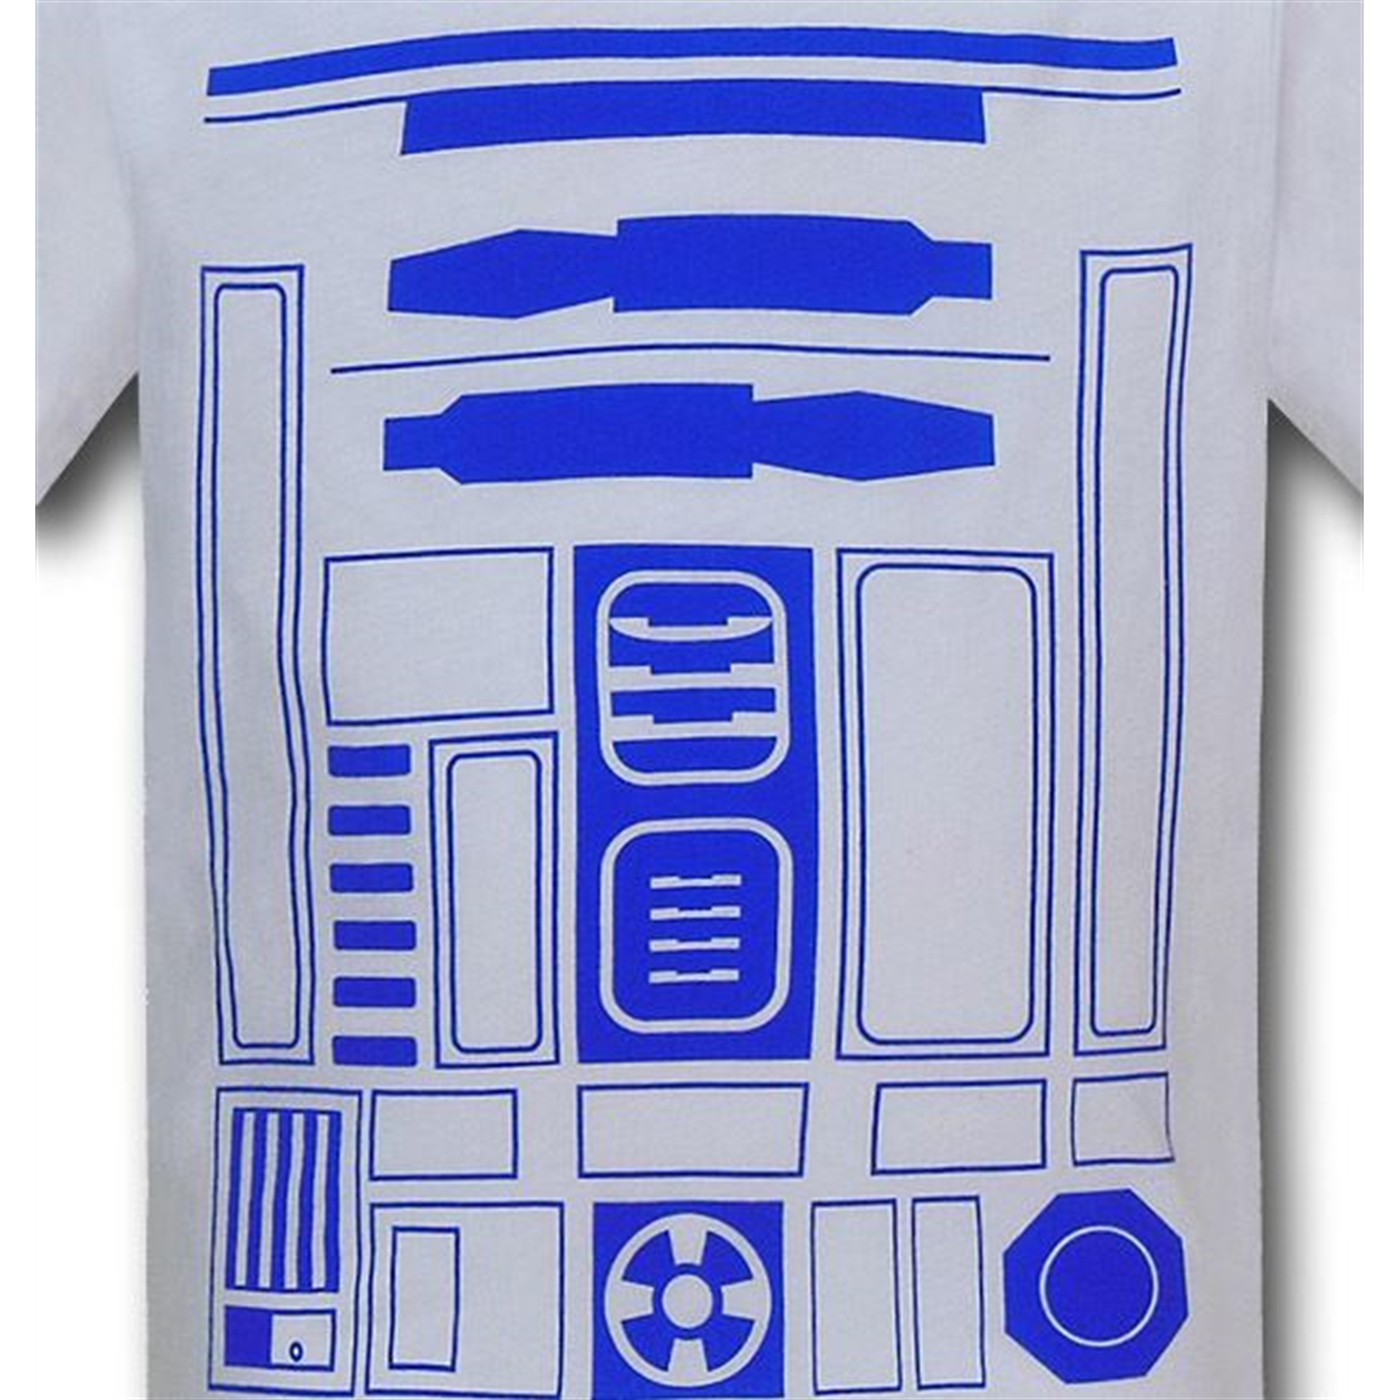 Star Wars R2D2 Kids Costume T-Shirt